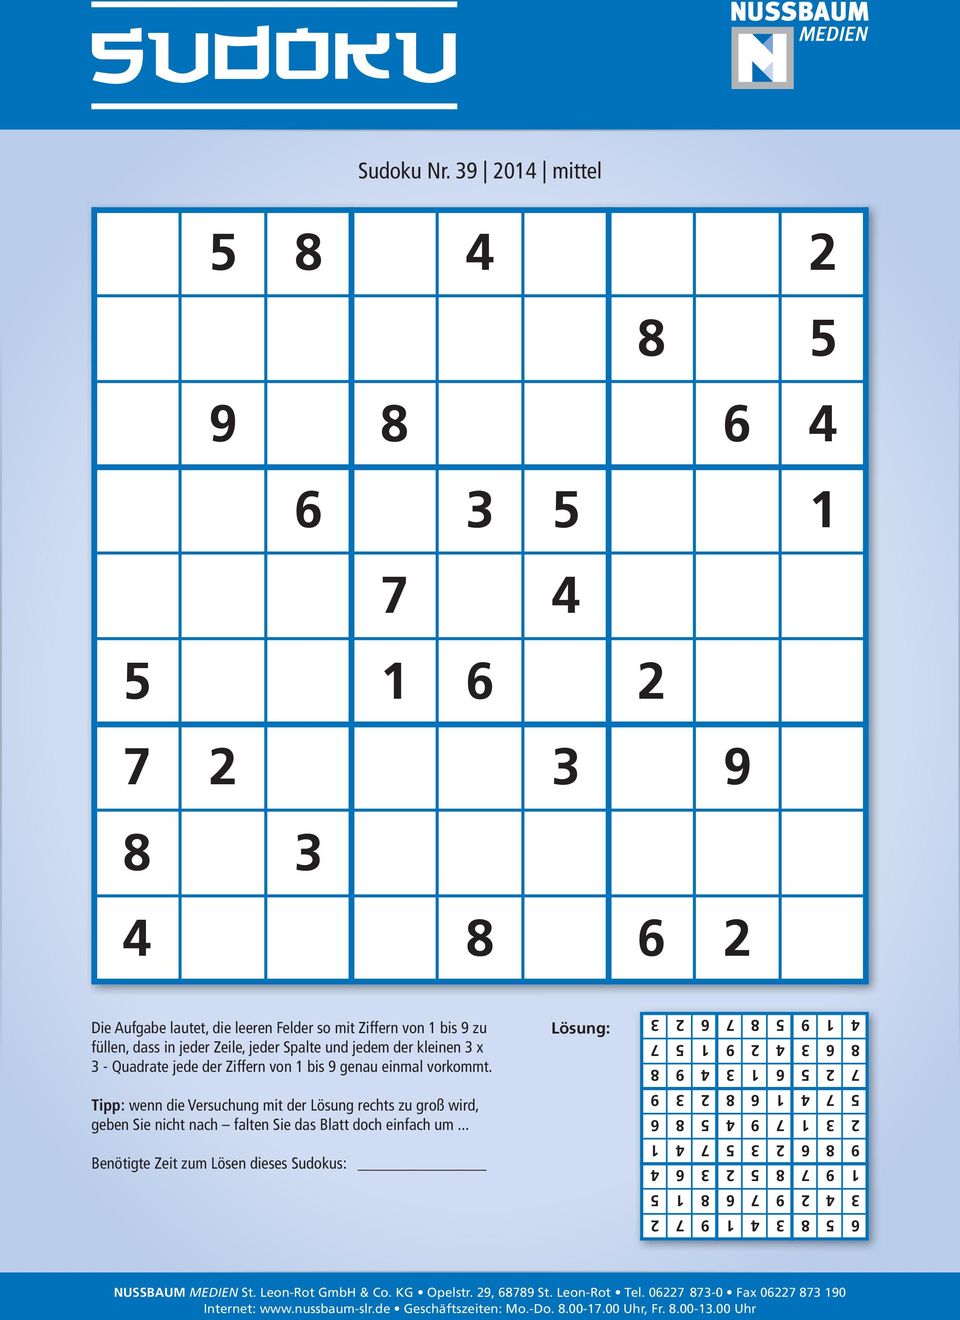 kleinen 3 x 3 - Quadrate jede der Ziffern von 1 bis 9 genau einmal vorkommt. Tipp: wenn die Versuchung mit der Lösung rechts zu groß wird, geben Sie nicht nach falten Sie das Blatt doch einfach um.